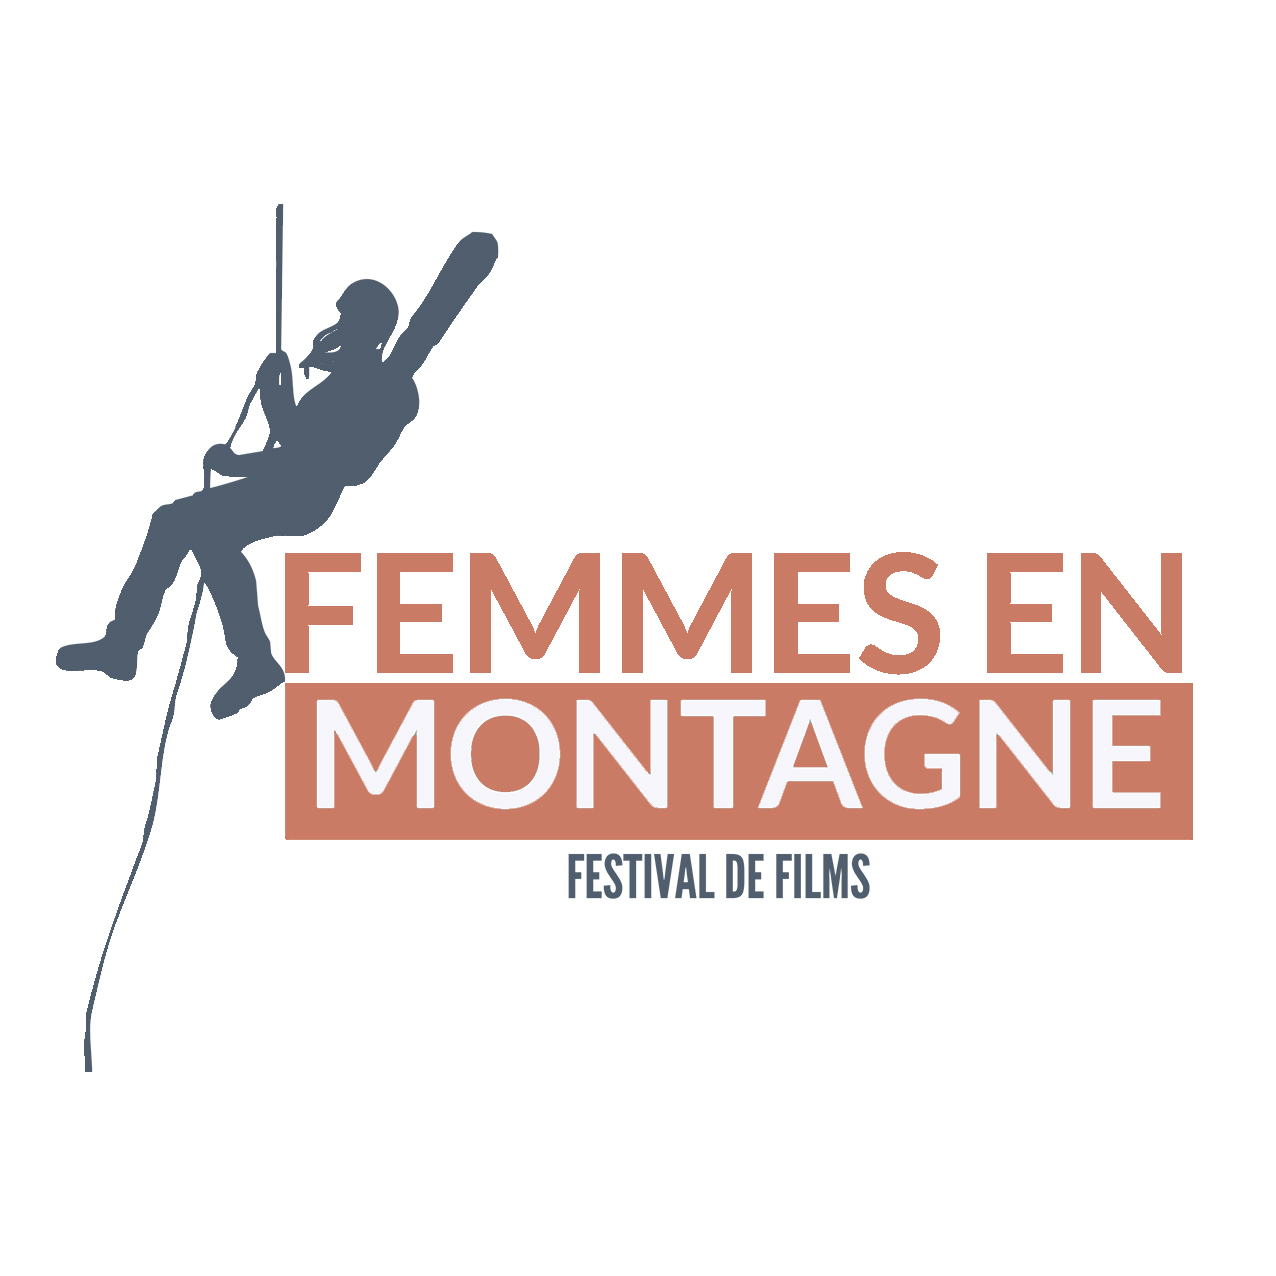 FEMMES EN MONTAGNE - FESTIVAL DE FILMS